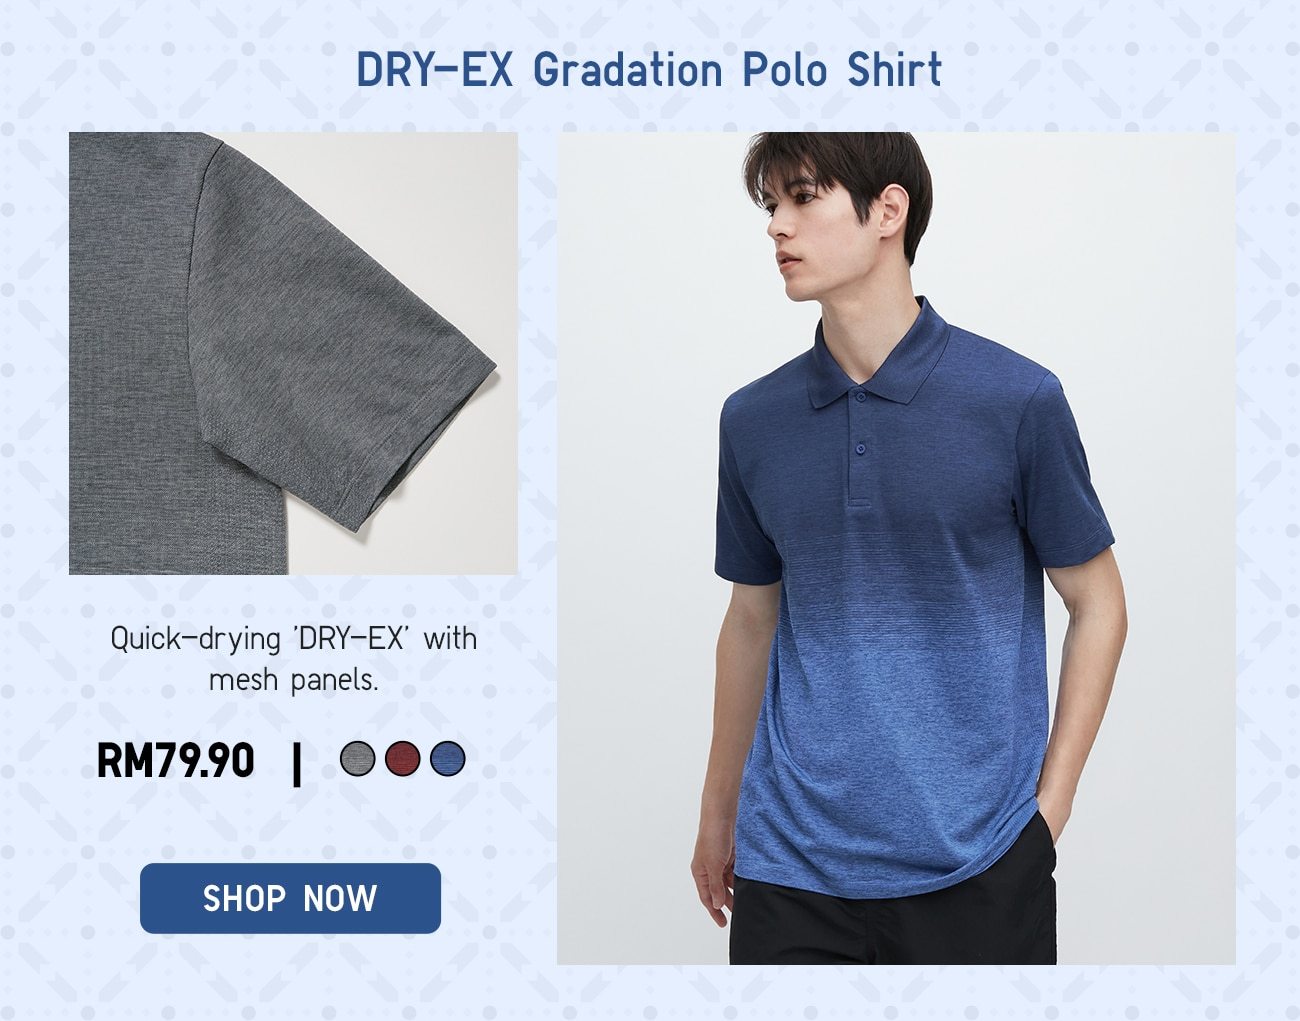 DRY-EX Gradation Polo Shirt